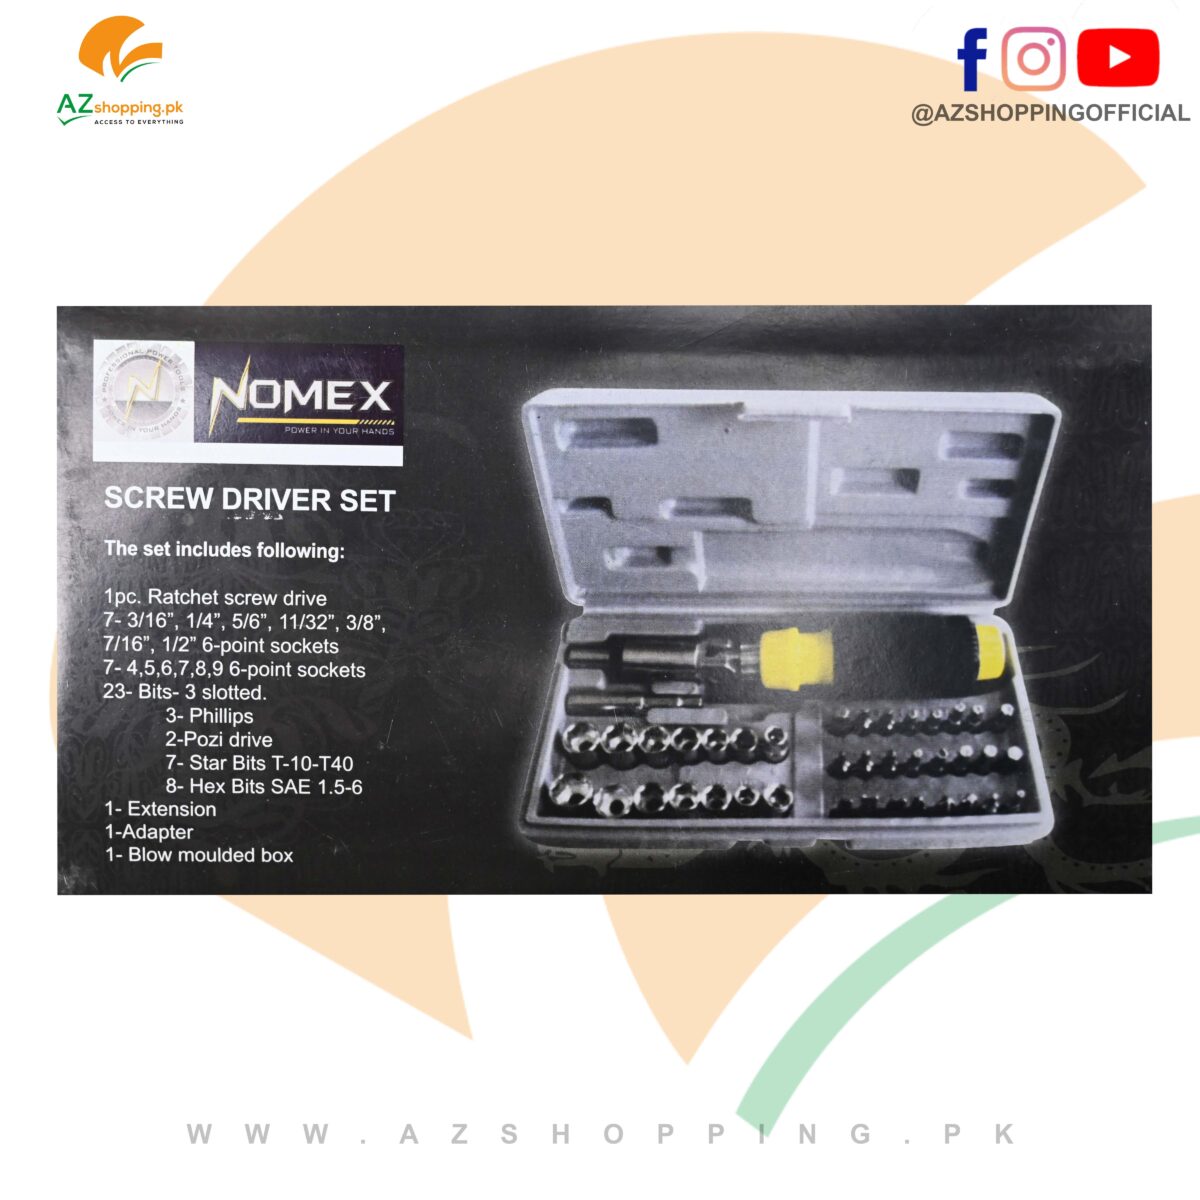 Nomex – Screw Driver Set – 41 Pcs Bit and Socket Set – Model: Item No.:ST606192